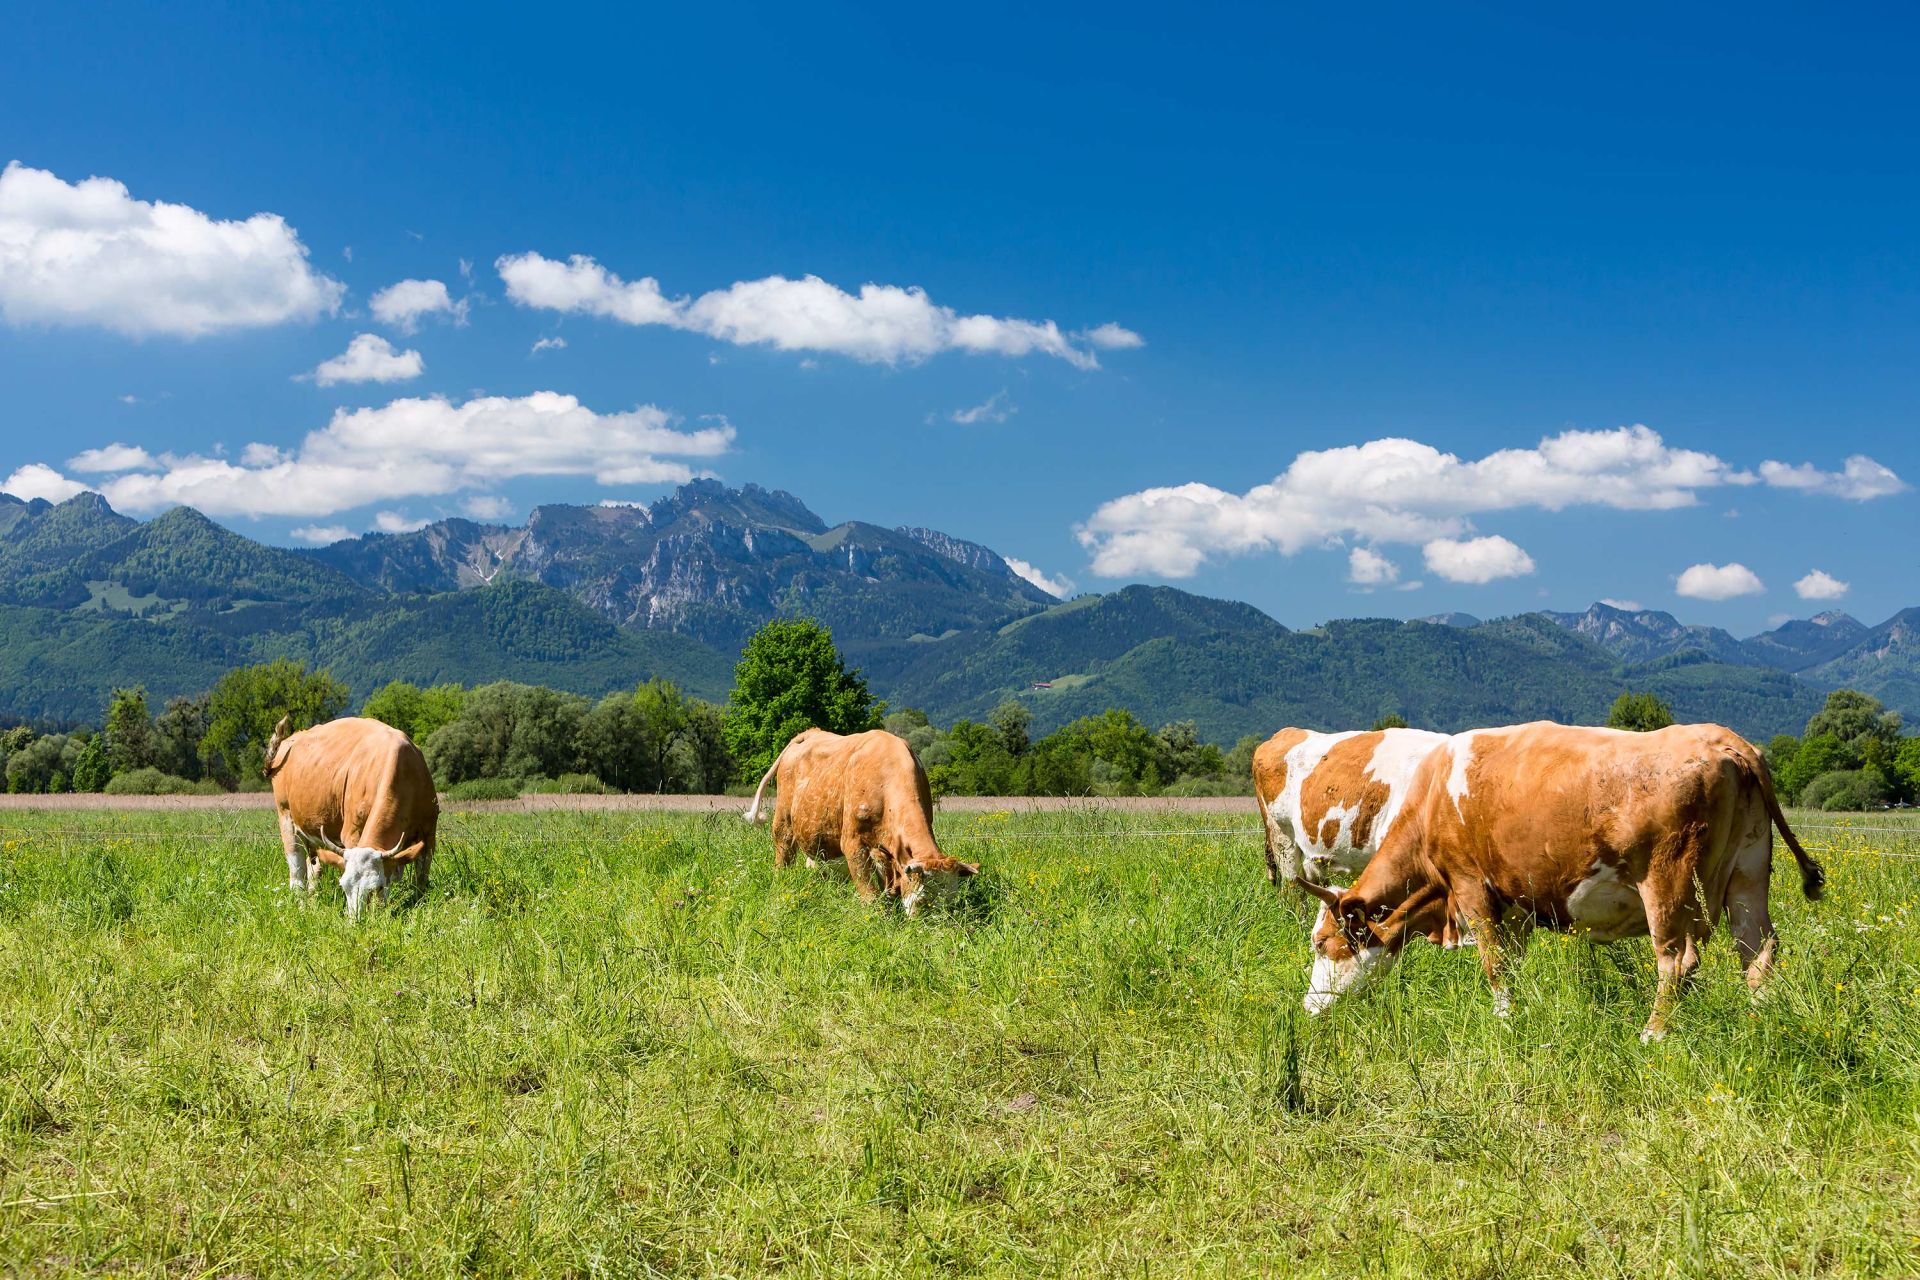 Auf einer Wiese stehen mehrere Kühe. Im Hintergrund Berge. Es ist ein sonniger Tag mit blauem Himmel und weißen Wölkchen.